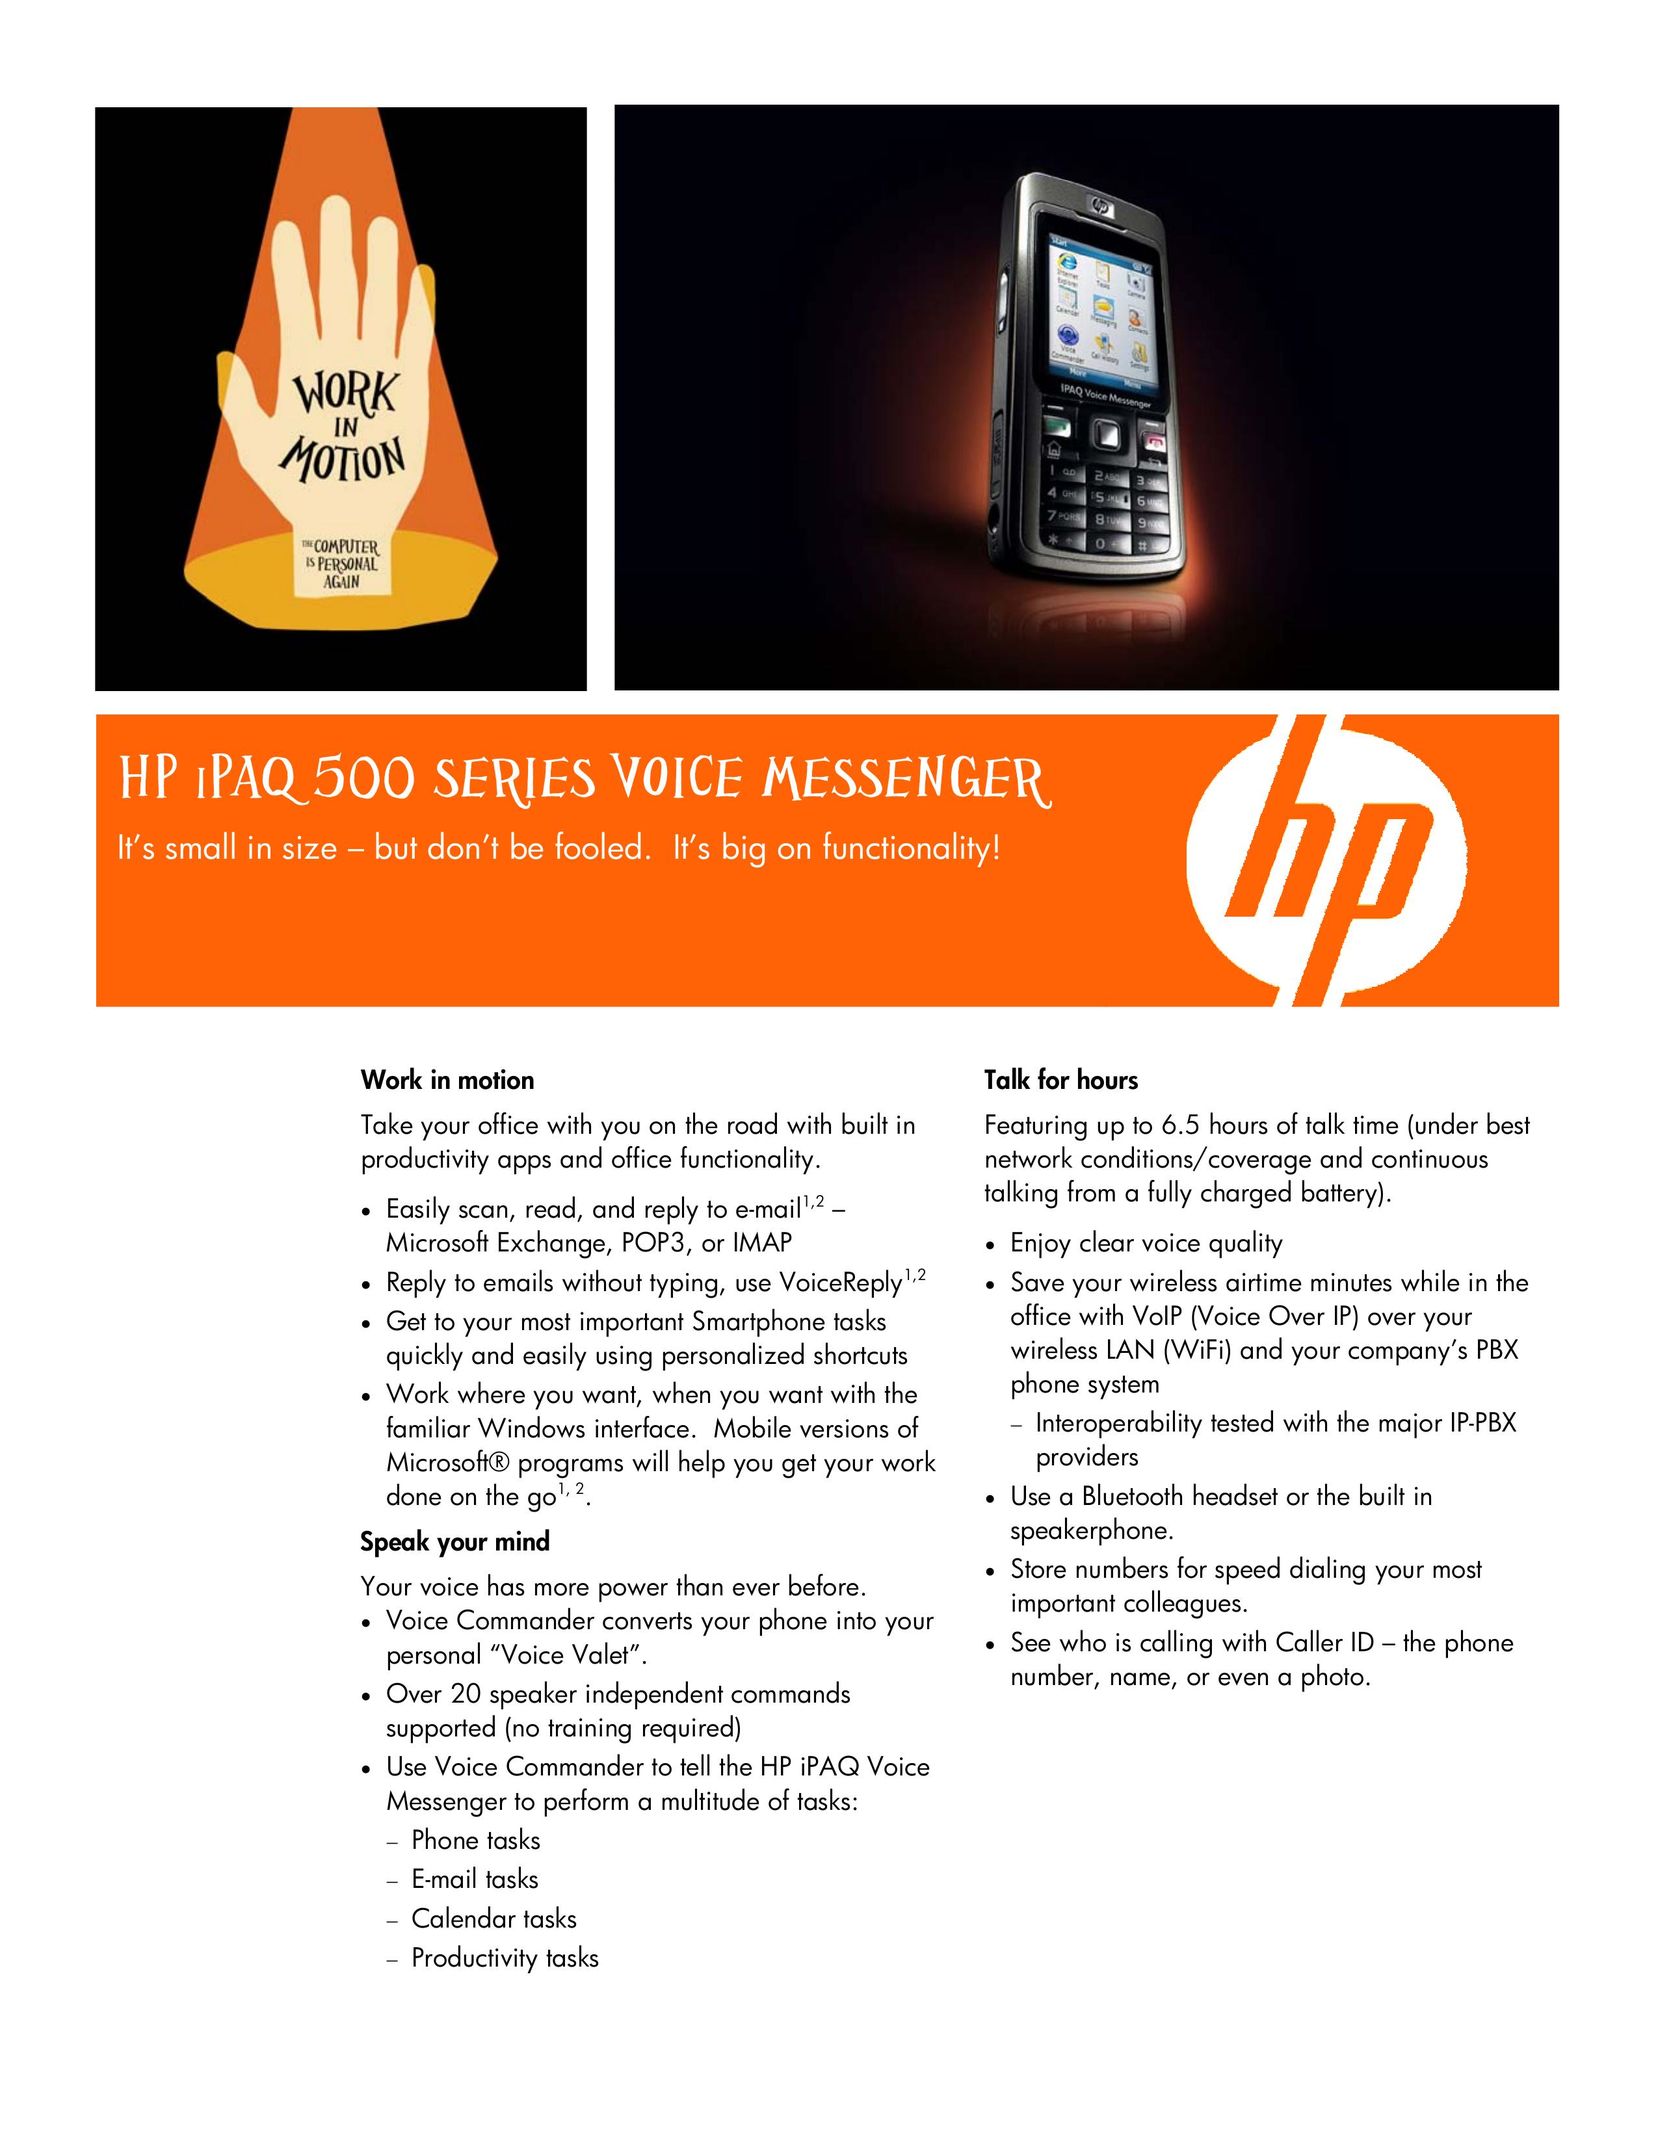 HP (Hewlett-Packard) 500 Cell Phone User Manual